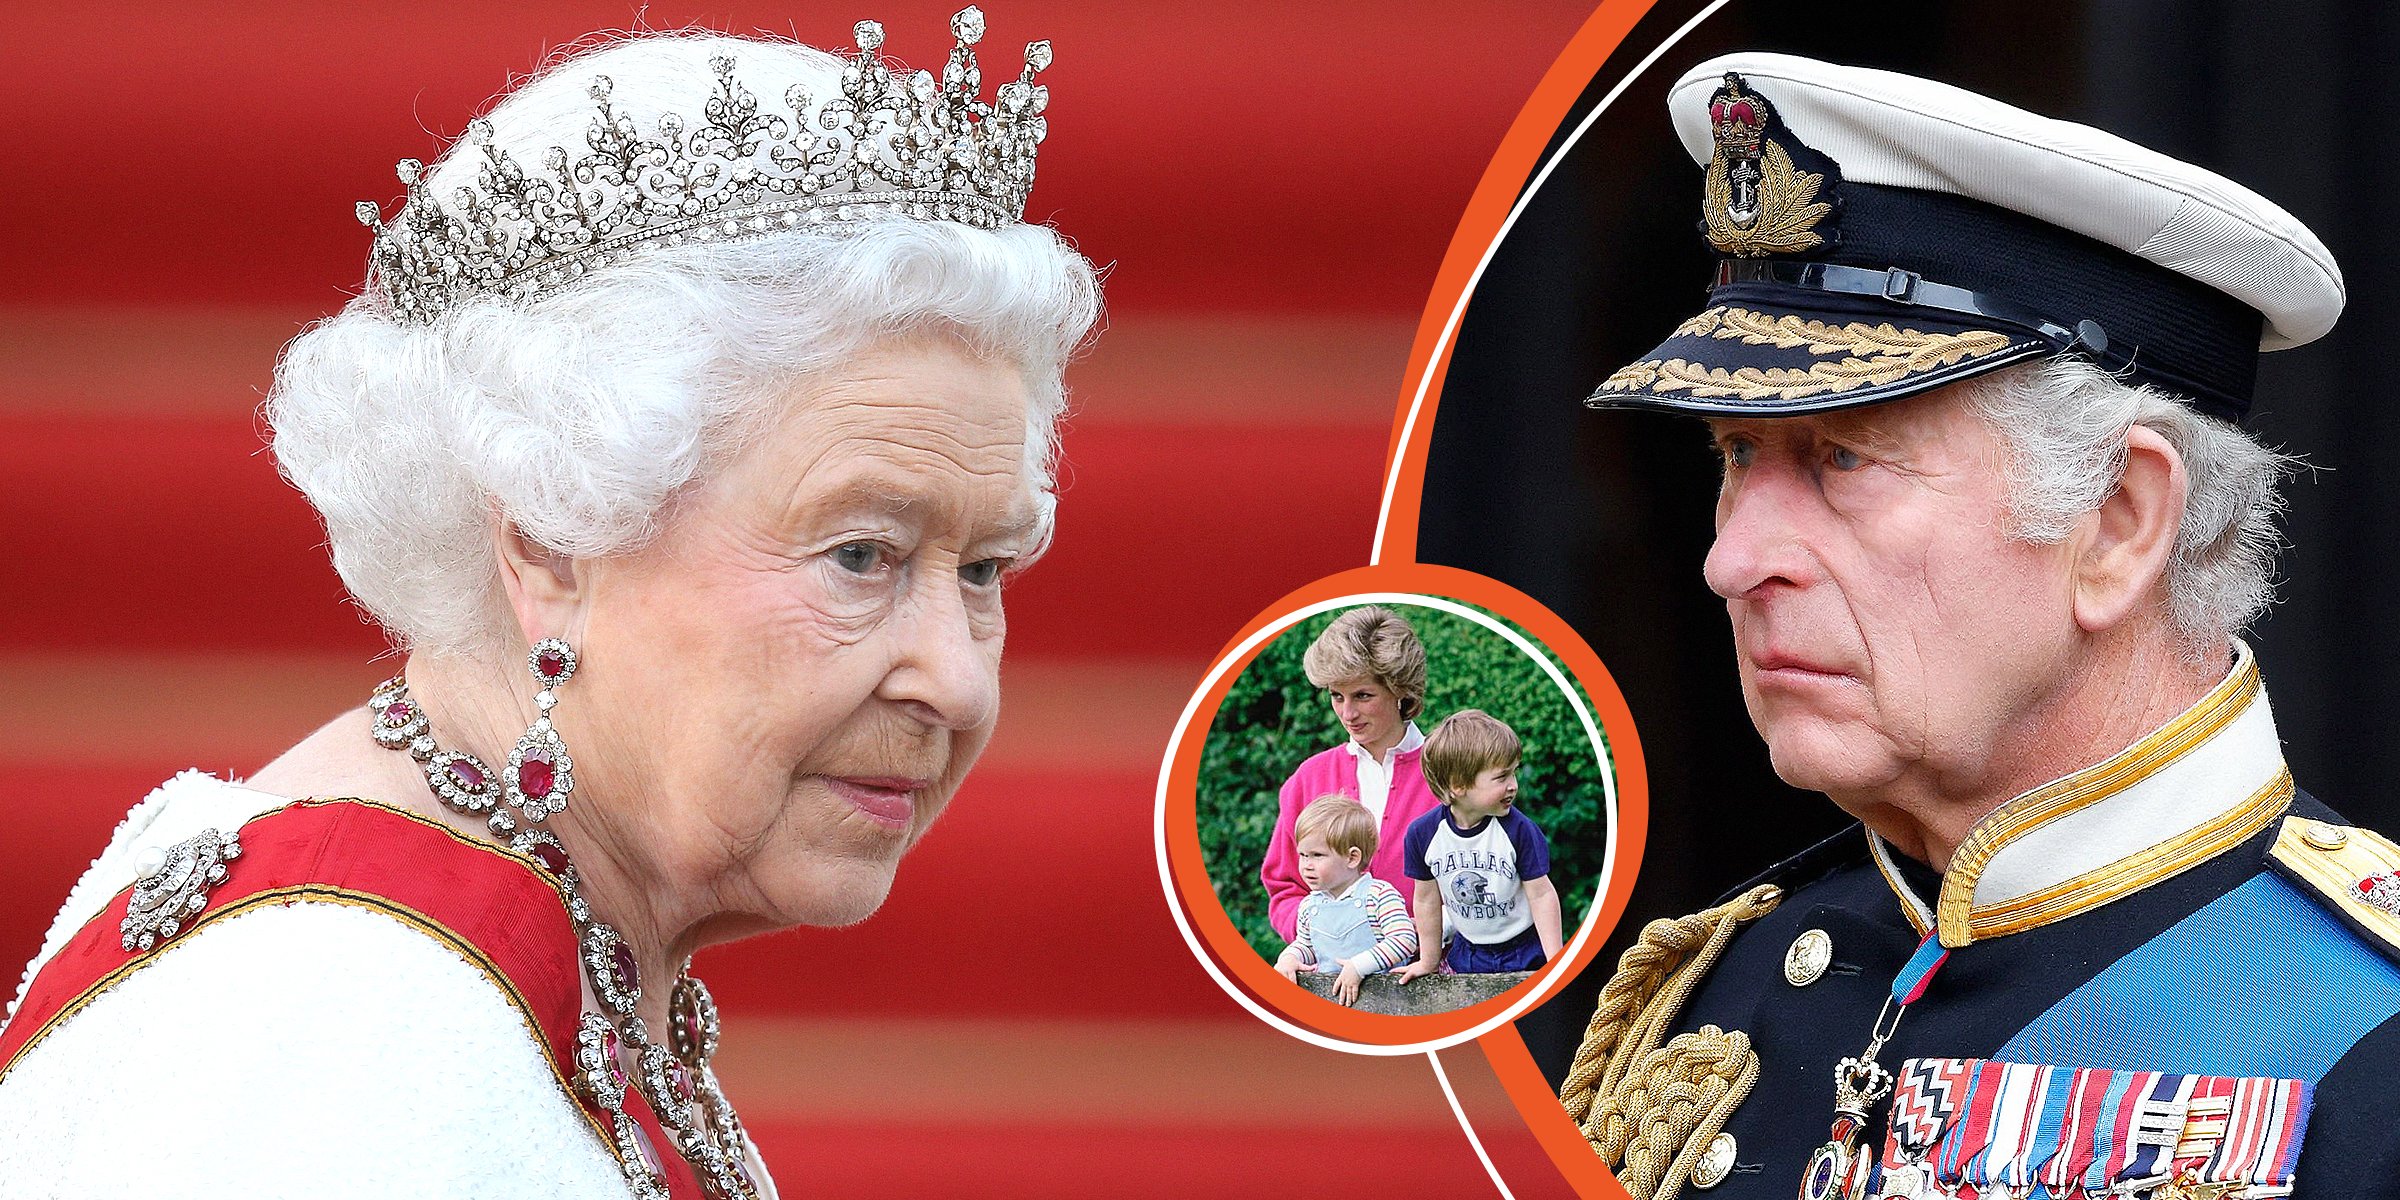 La reina Elizabeth II | La princesa Diana, príncipe Harry y príncipe William | Rey Charles III | Foto: Getty Images